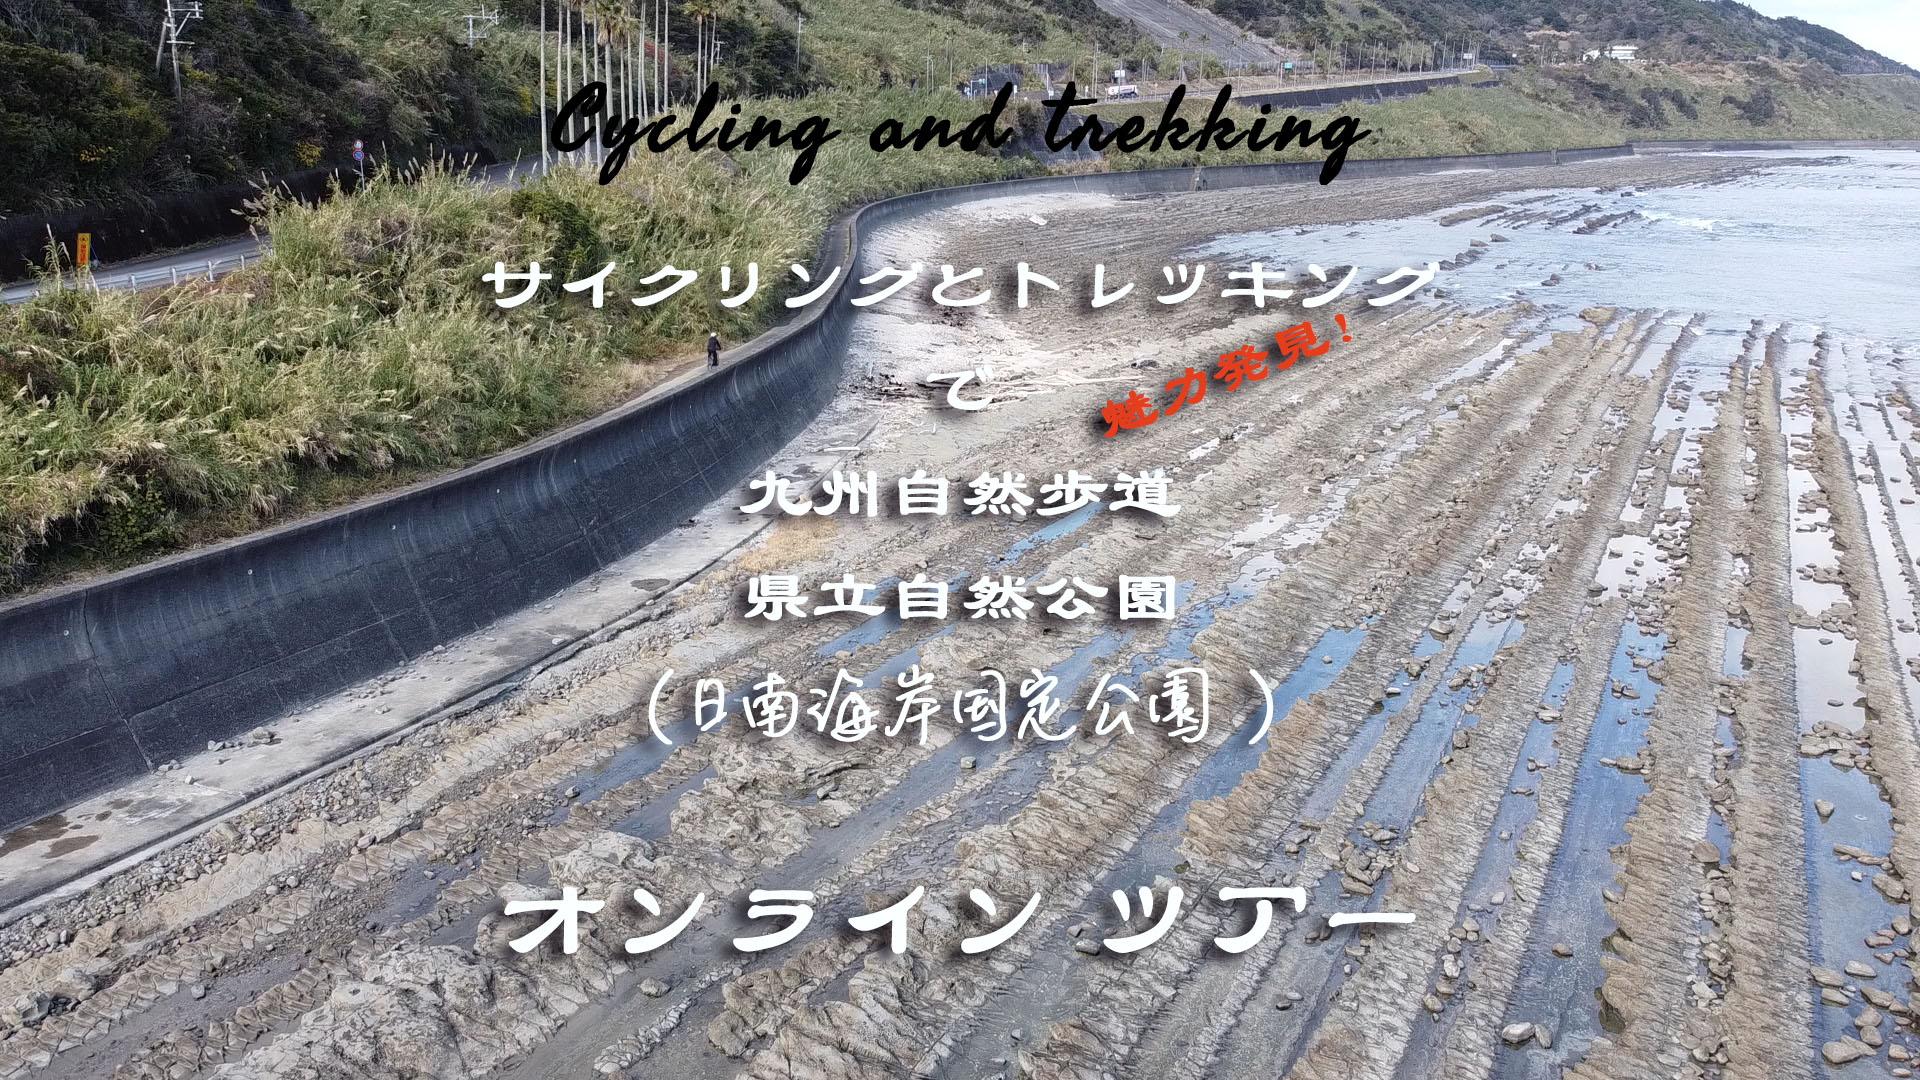 九州自然歩道サイクリングとトレッキングのイメージ